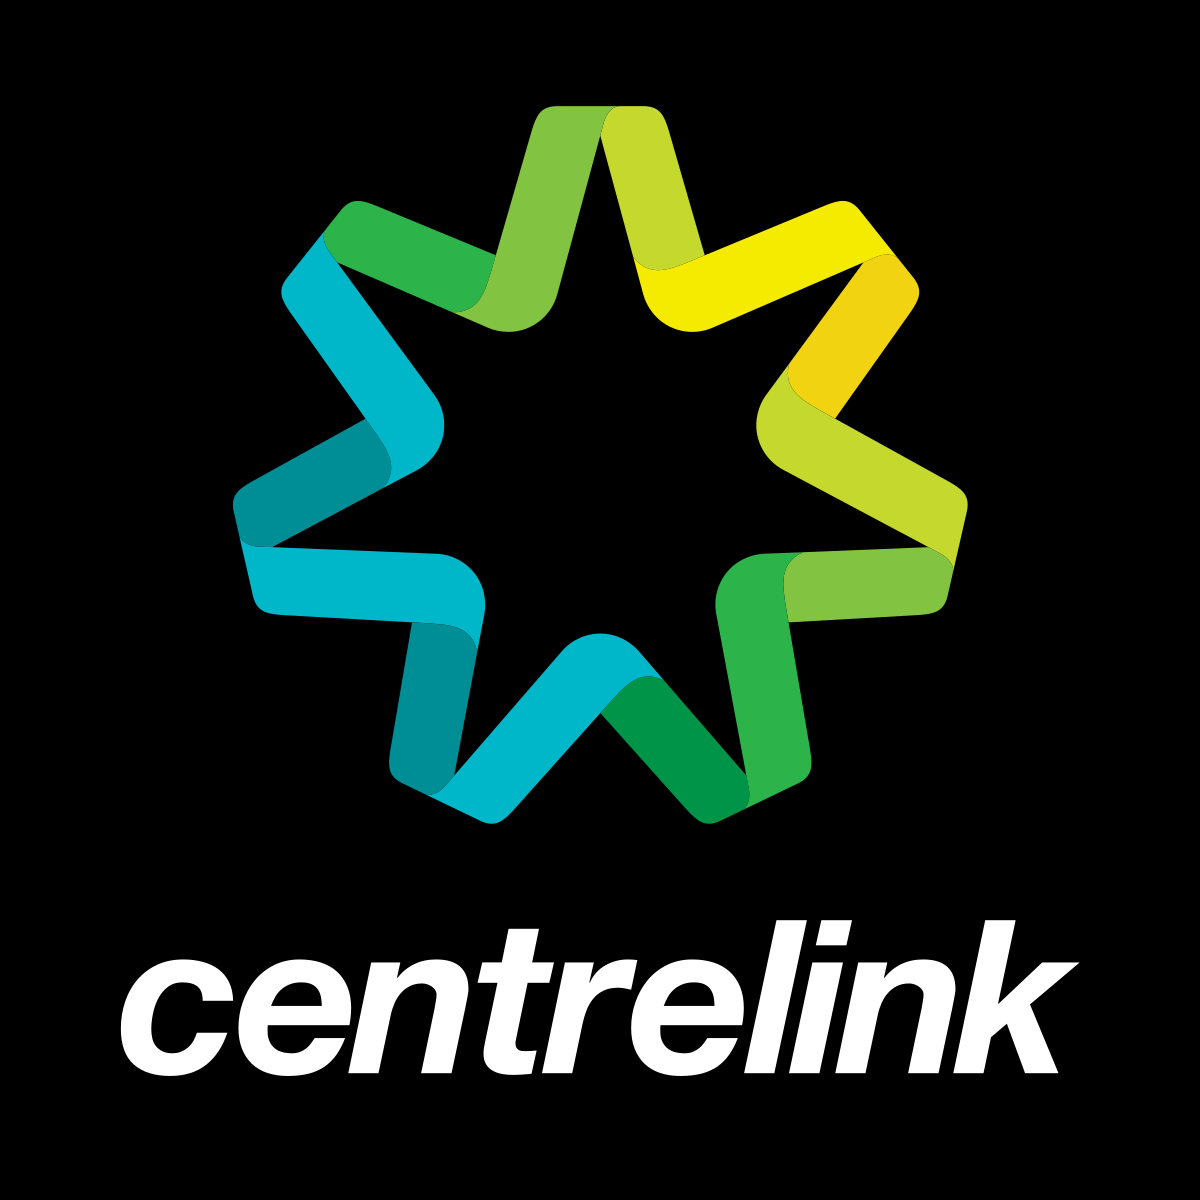 Holiday arrangements for Centrelink, Medicare, Child Support